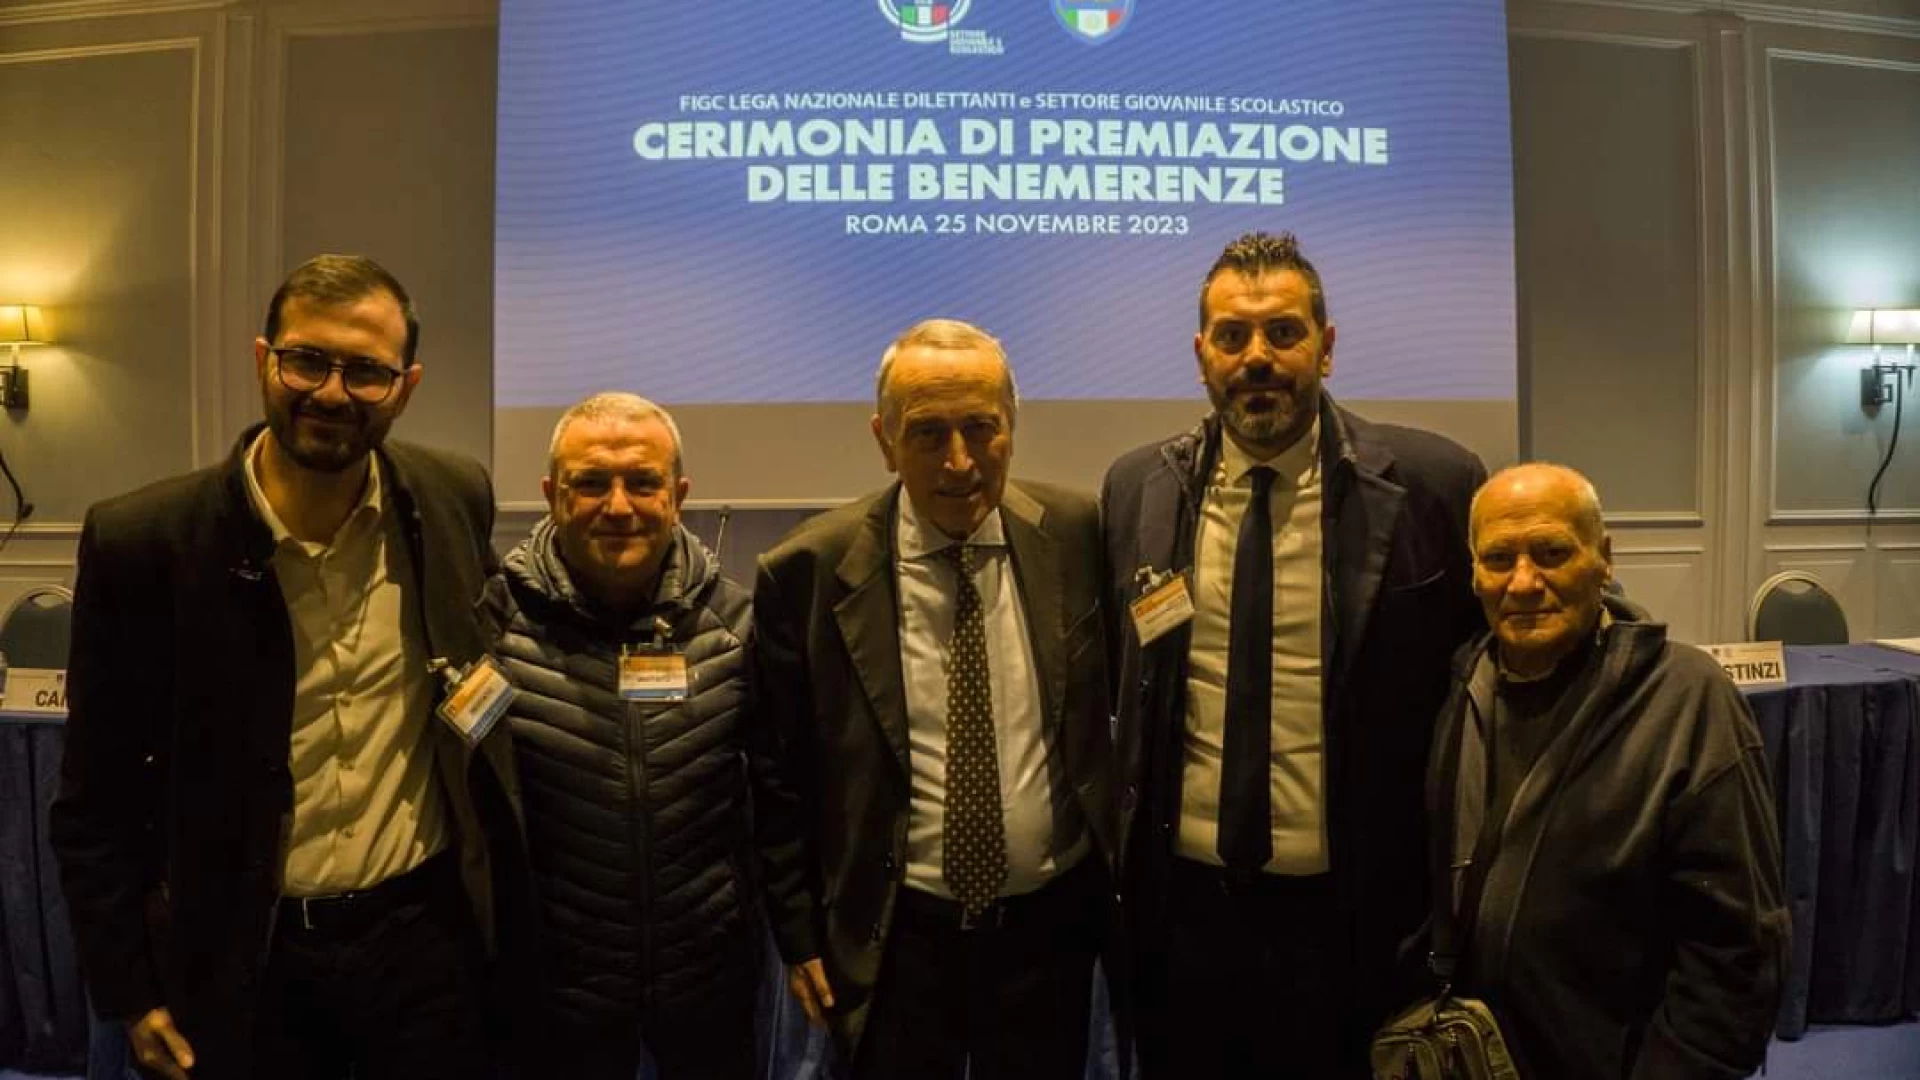 Un grande traguardo per la Polisportiva Roccaravindola: consegnata a  Roma ha ricevuto la benemerenza per i suoi 50 anni di storia.